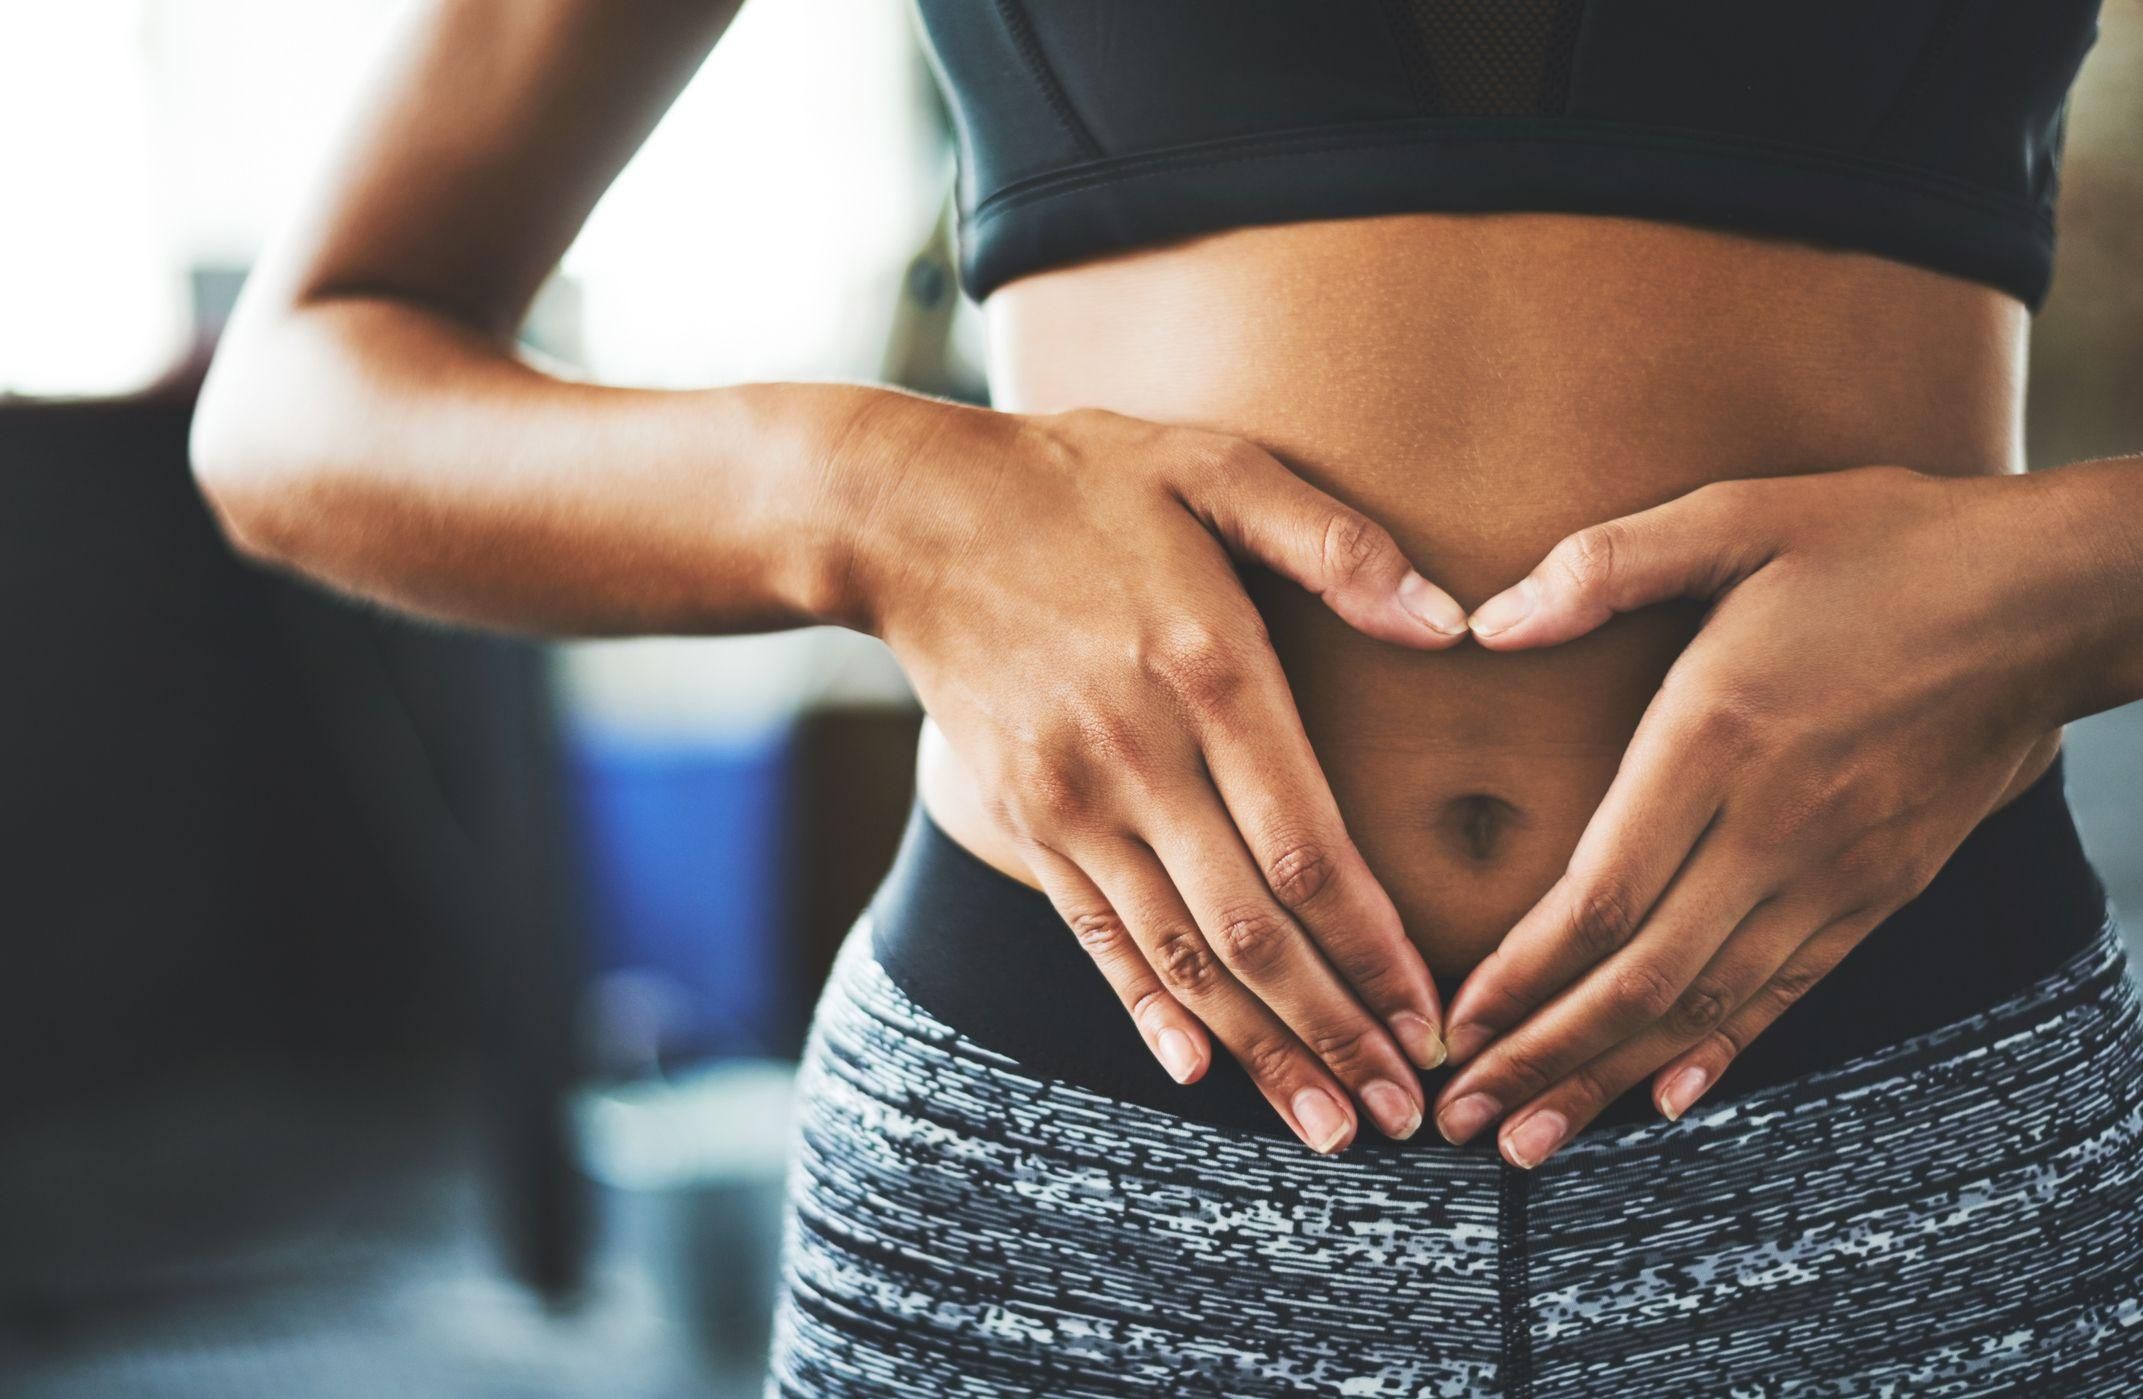 Як зміцнити м'язи живота при діастазі: вправи на прес після вагітності